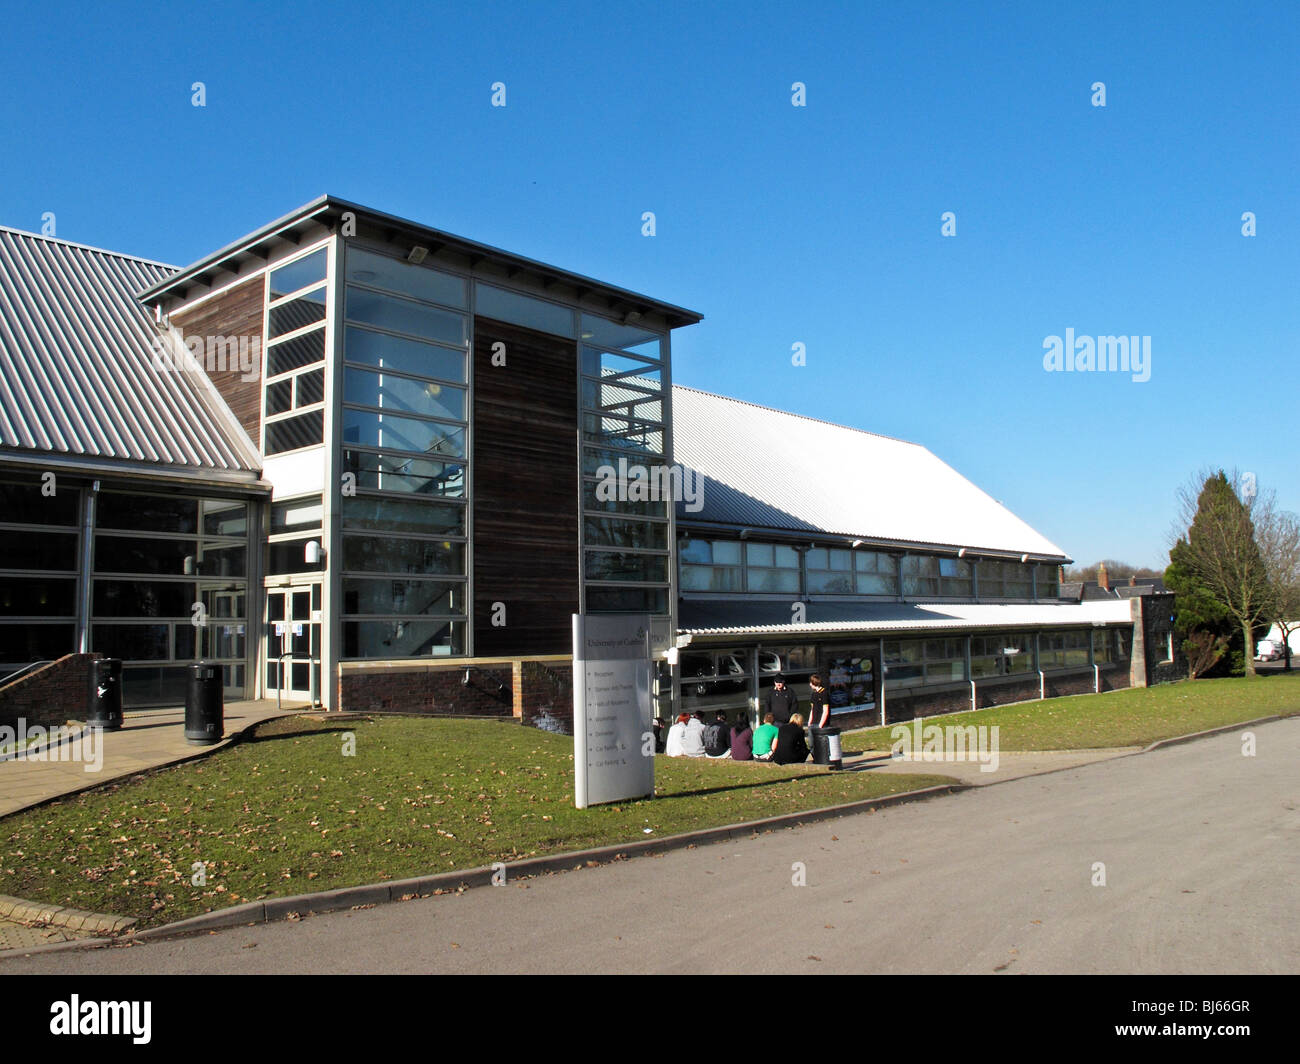 The University of Cumbria Brampton Road campus, Carlisle, Cumbria, UK Stock Photo